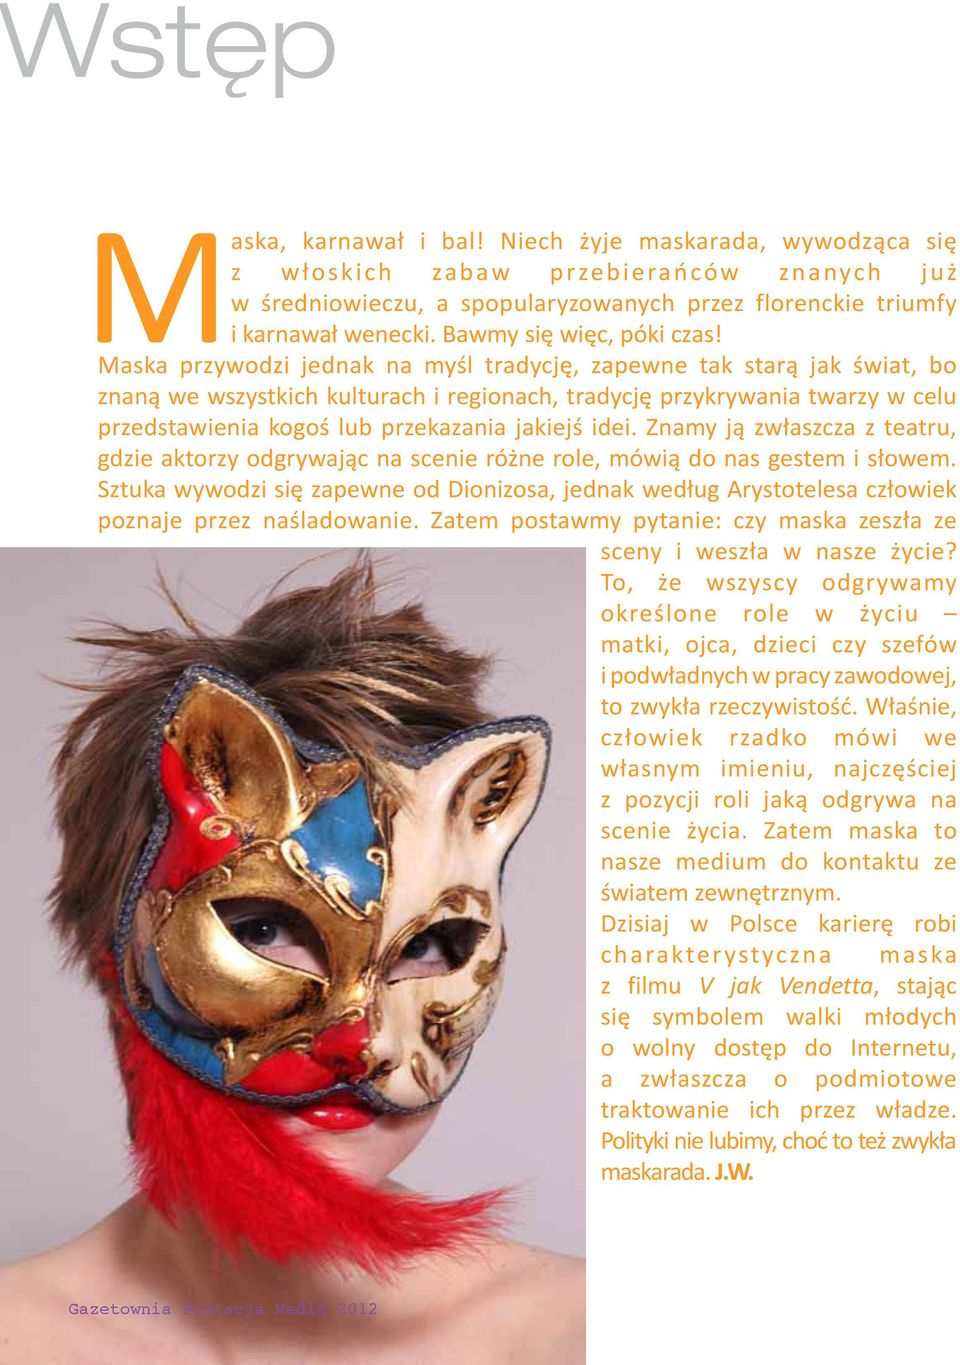 Maska przywodzi jednak na myśl tradycję, zapewne tak starą jak świat, bo znaną we wszystkich kulturach i regionach, tradycję przykrywania twarzy w celu przedstawienia kogoś lub przekazania jakiejś